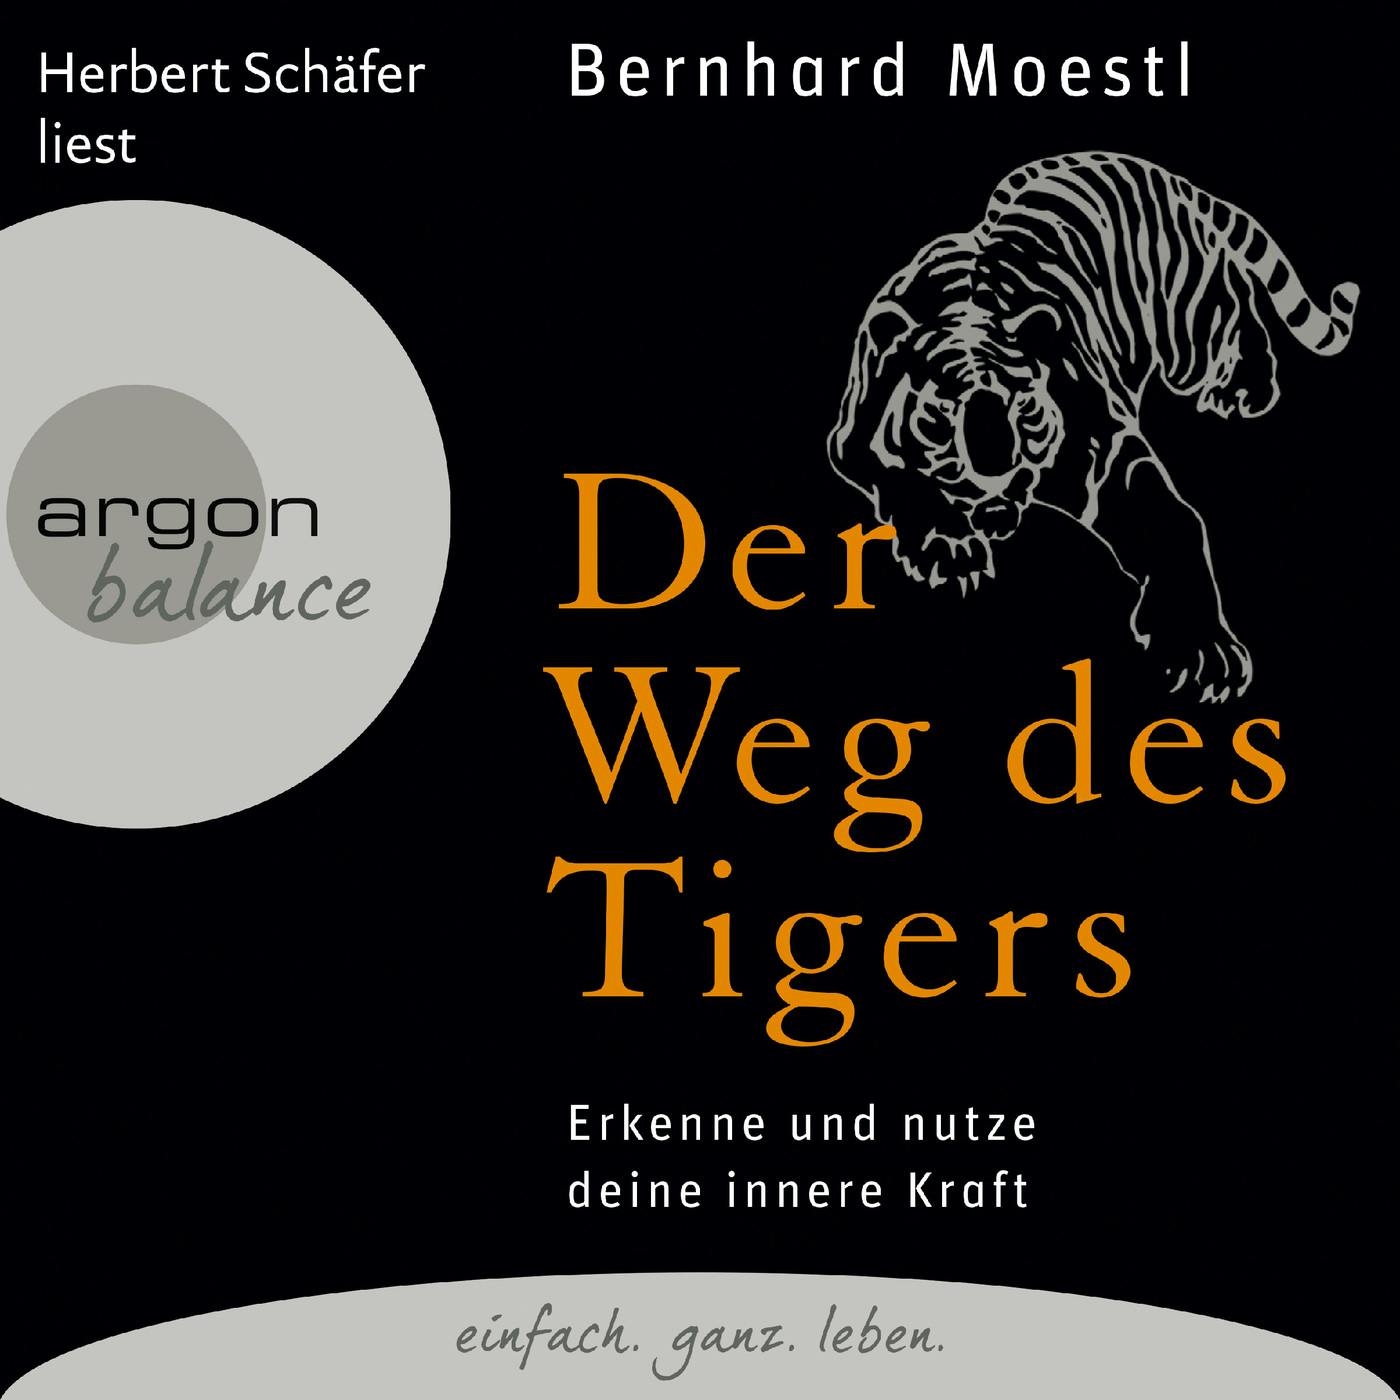 Der Weg des Tigers - Erkenne und nutze deine innere Kraft (Gekürzte Fassung) - Bernhard Moestl